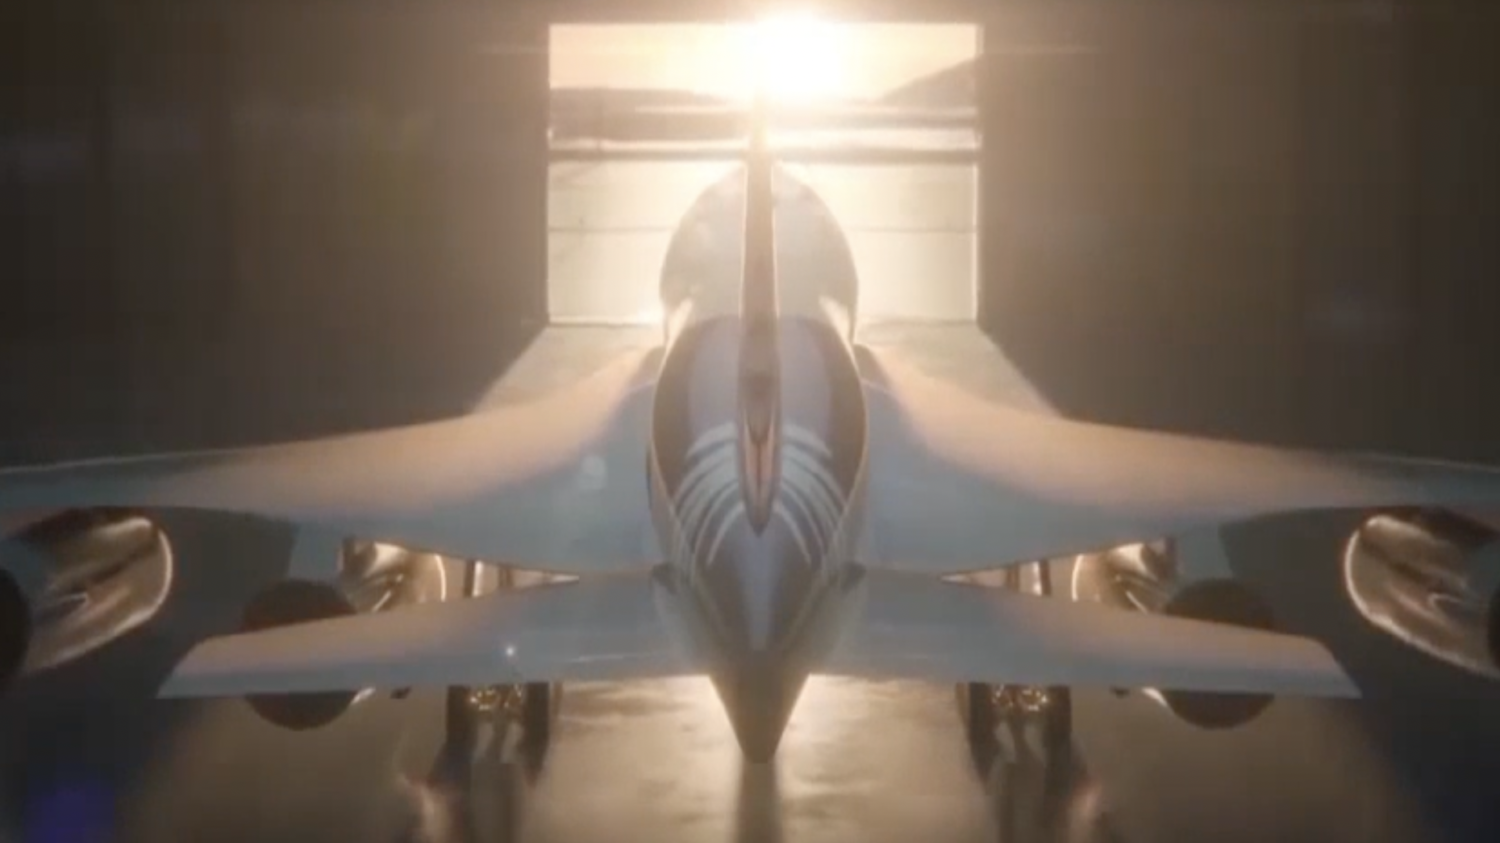 Supersonic jet in hangar